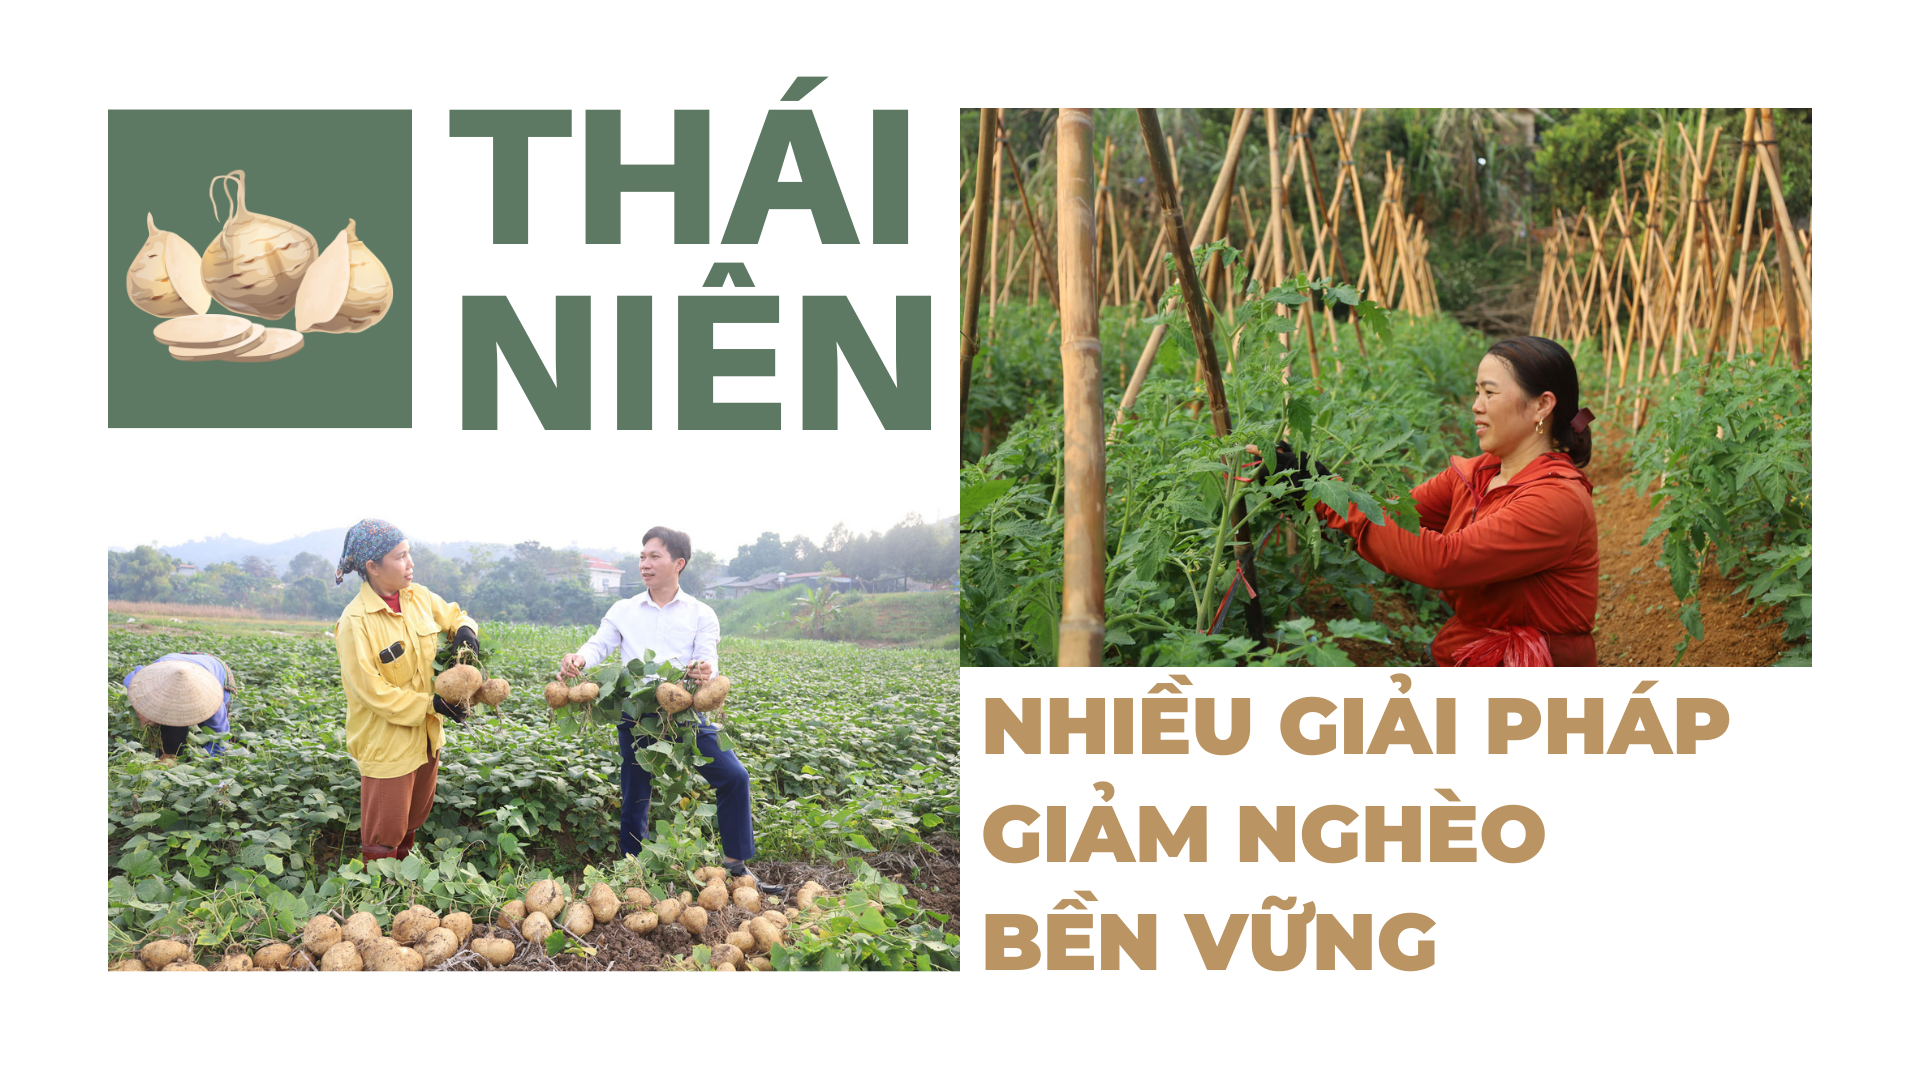 Thái Niên: Nhiều giải pháp giảm nghèo bền vững